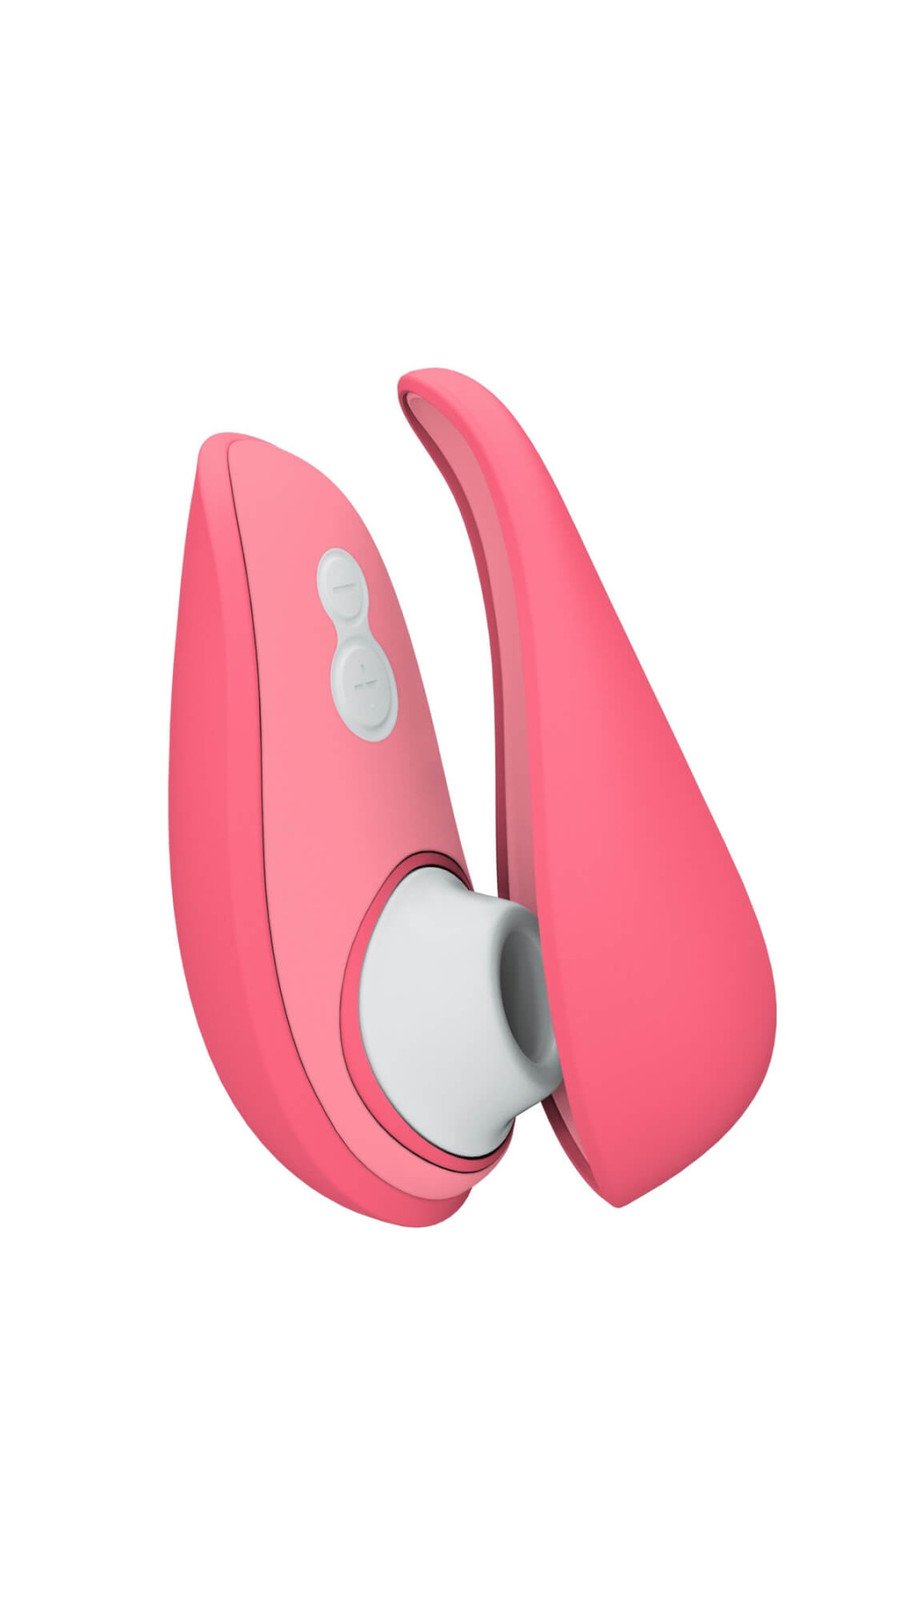 Womanizer Liberty 2 - dobíjecí stimulátor klitorisu se vzduchovou vlnou (růžový)